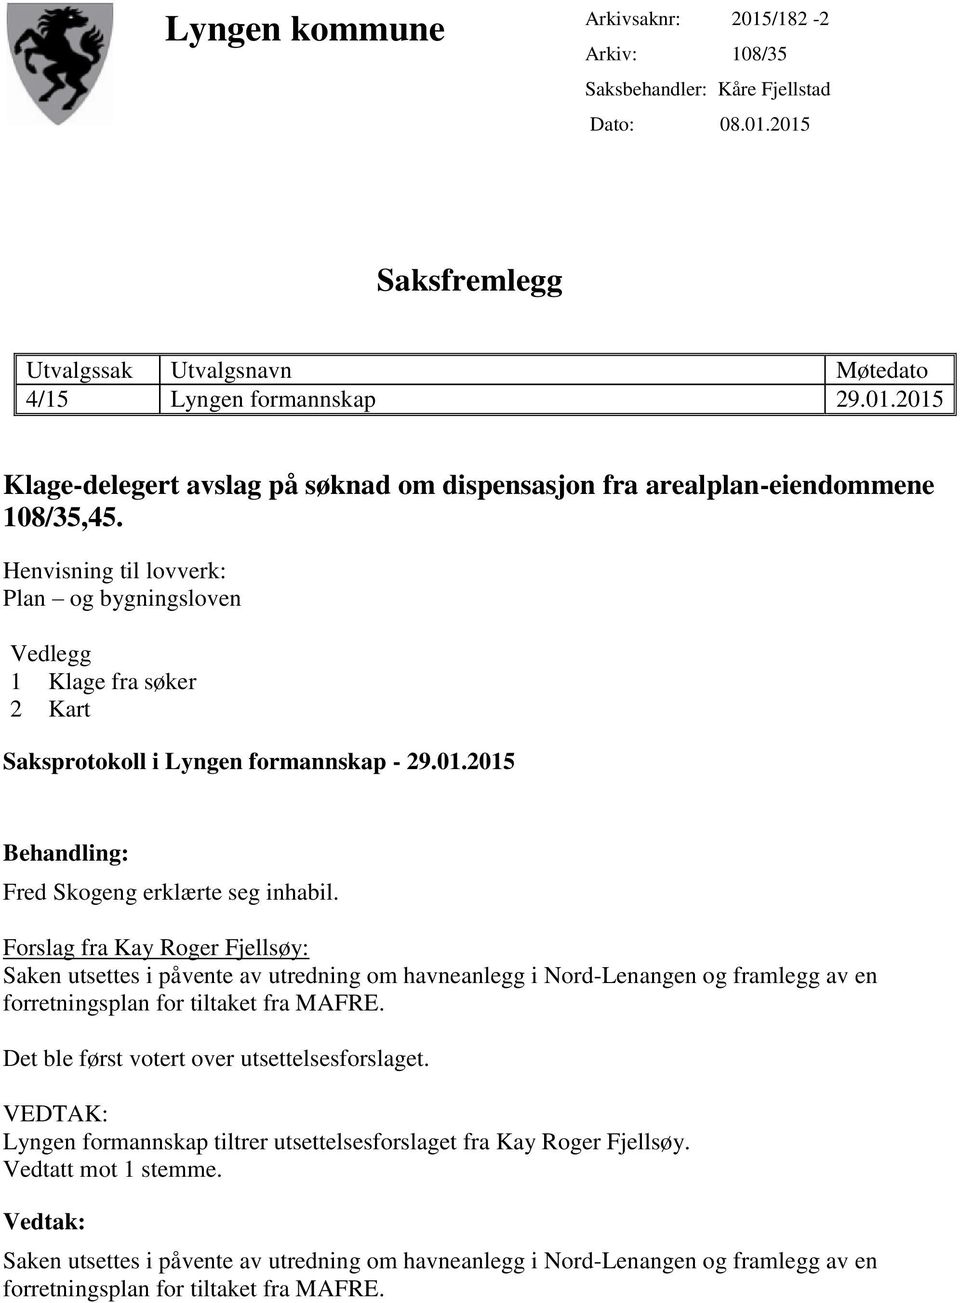 Forslag fra Kay Roger Fjellsøy: Saken utsettes i påvente av utredning om havneanlegg i Nord-Lenangen og framlegg av en forretningsplan for tiltaket fra MAFRE.